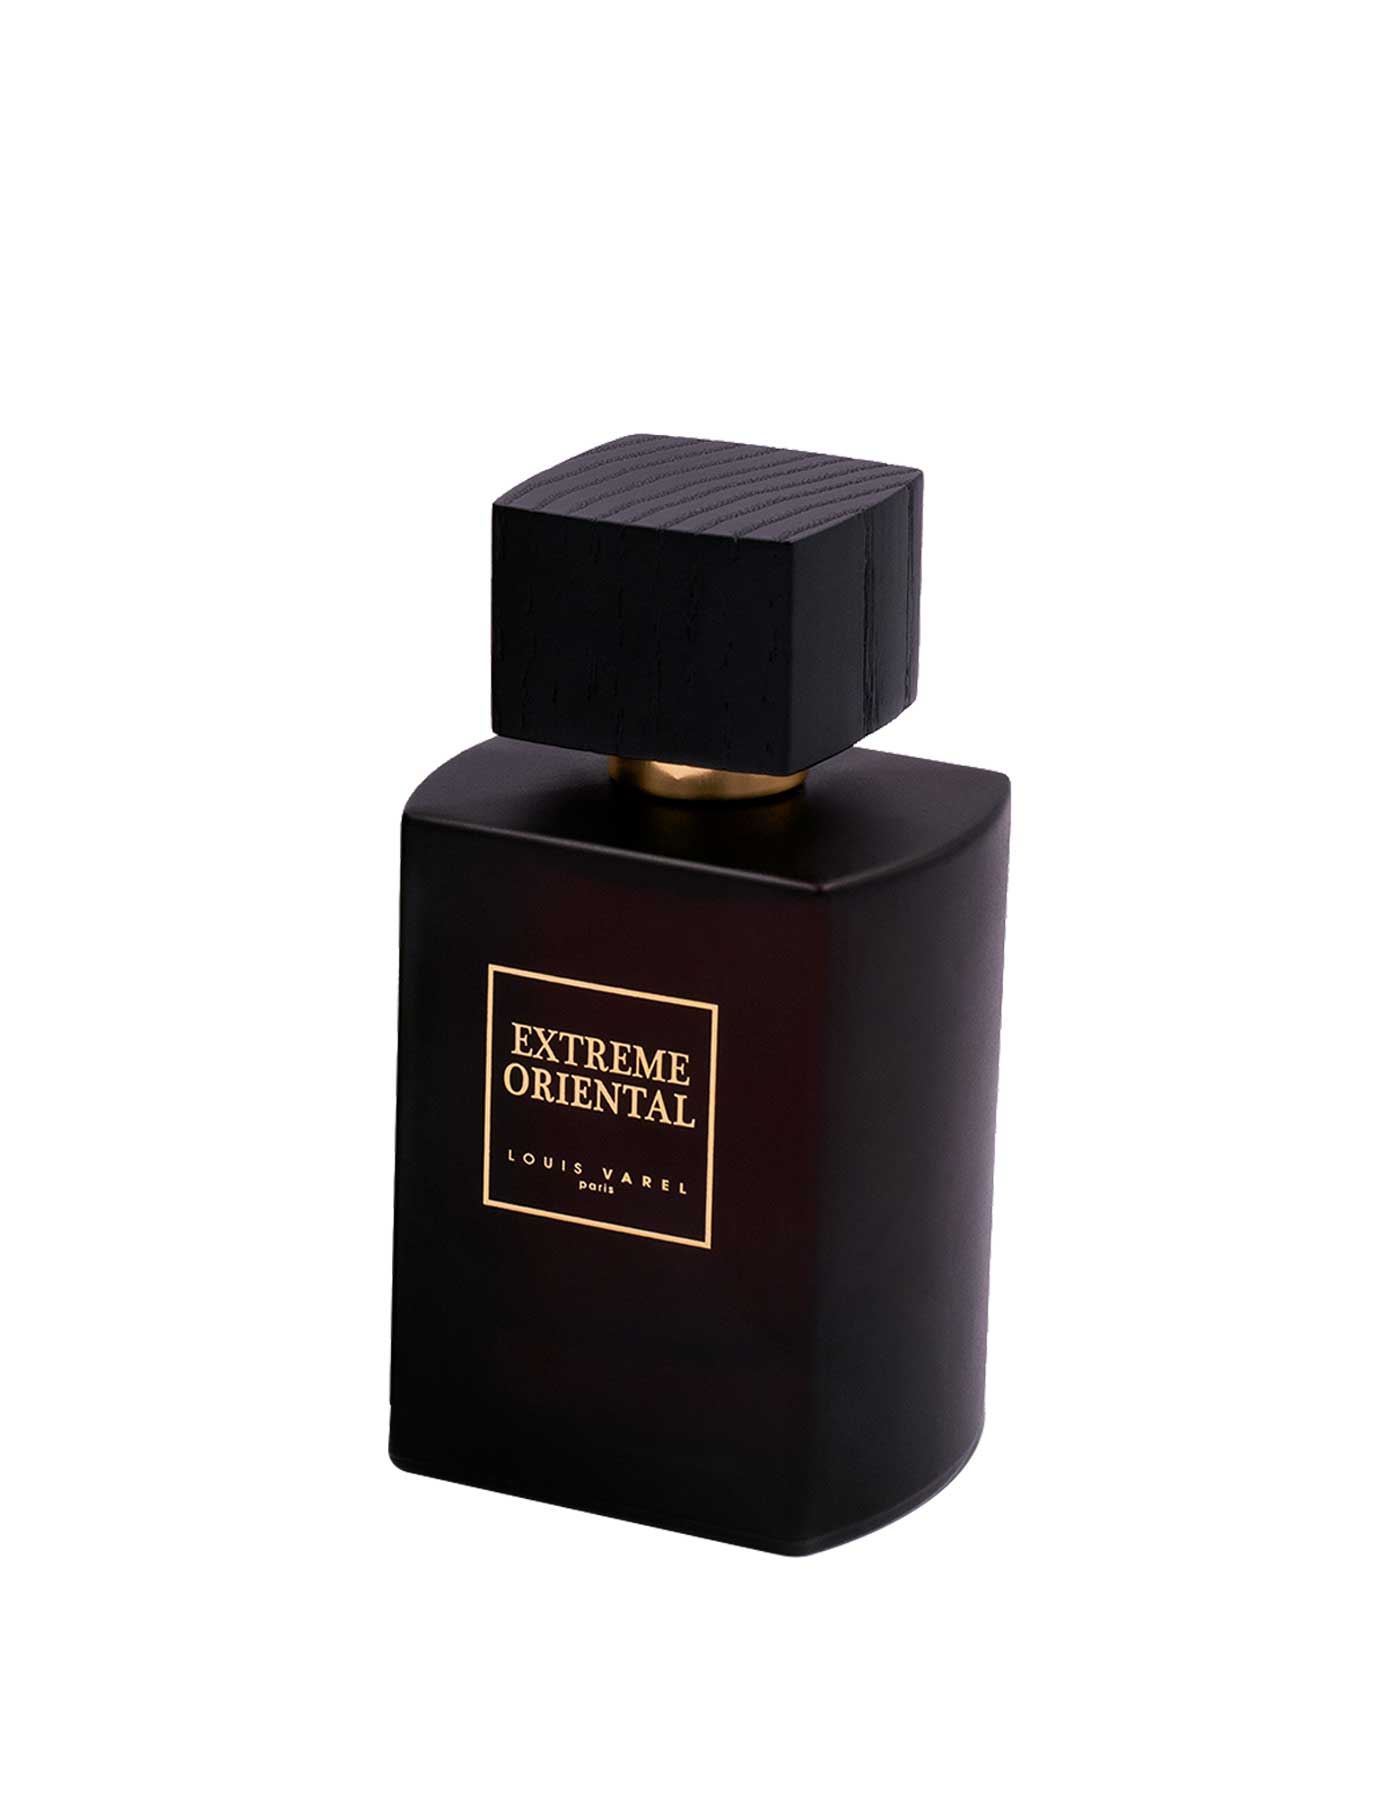 Louis Varel, Extreme Oriental EDP 100ml Perfume – Beautika Shop